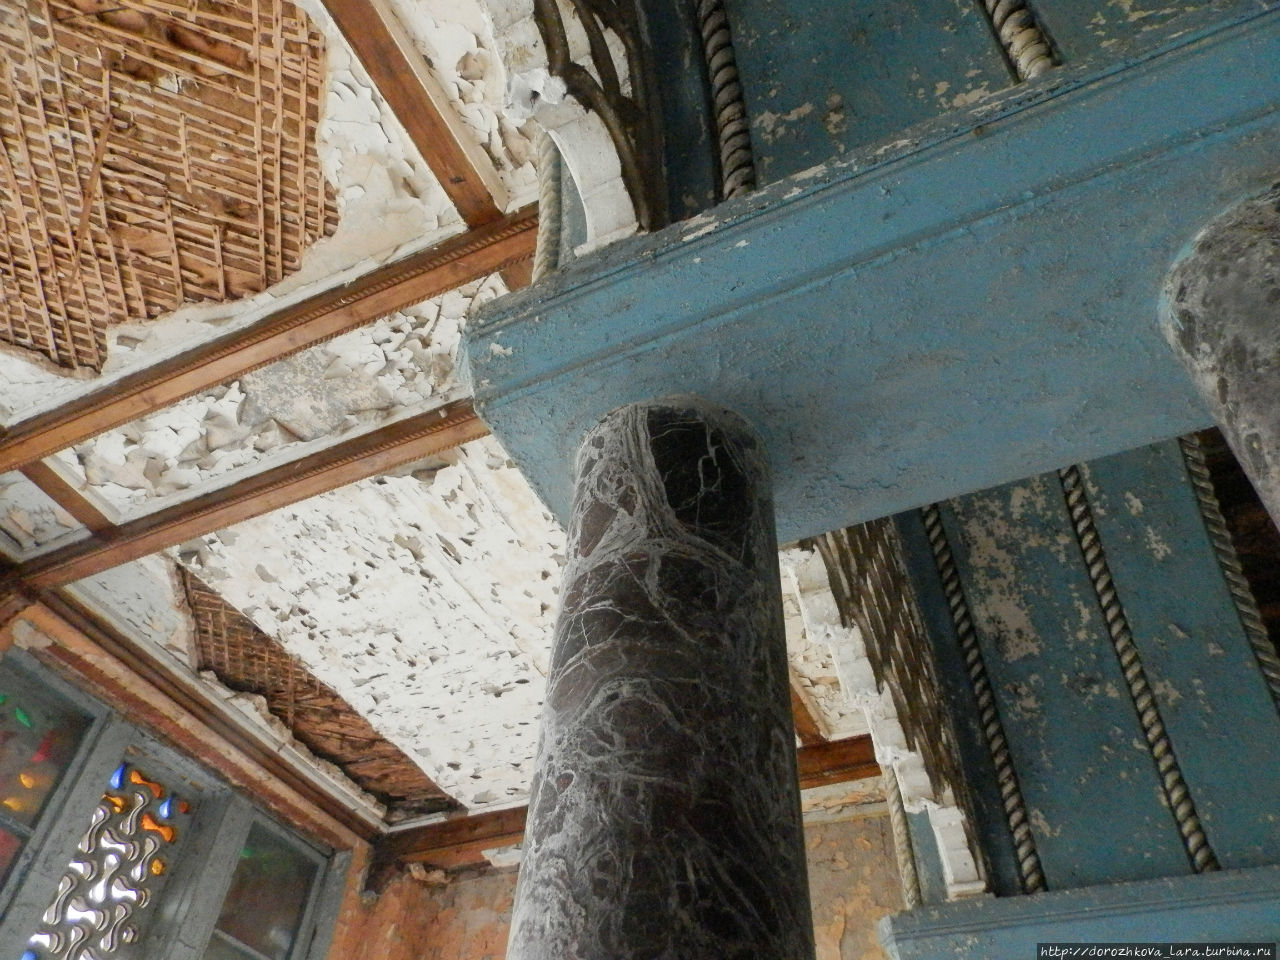 Мраморные колонны и обветшавший потолок, угрюмое сочетание... Юрино, Россия